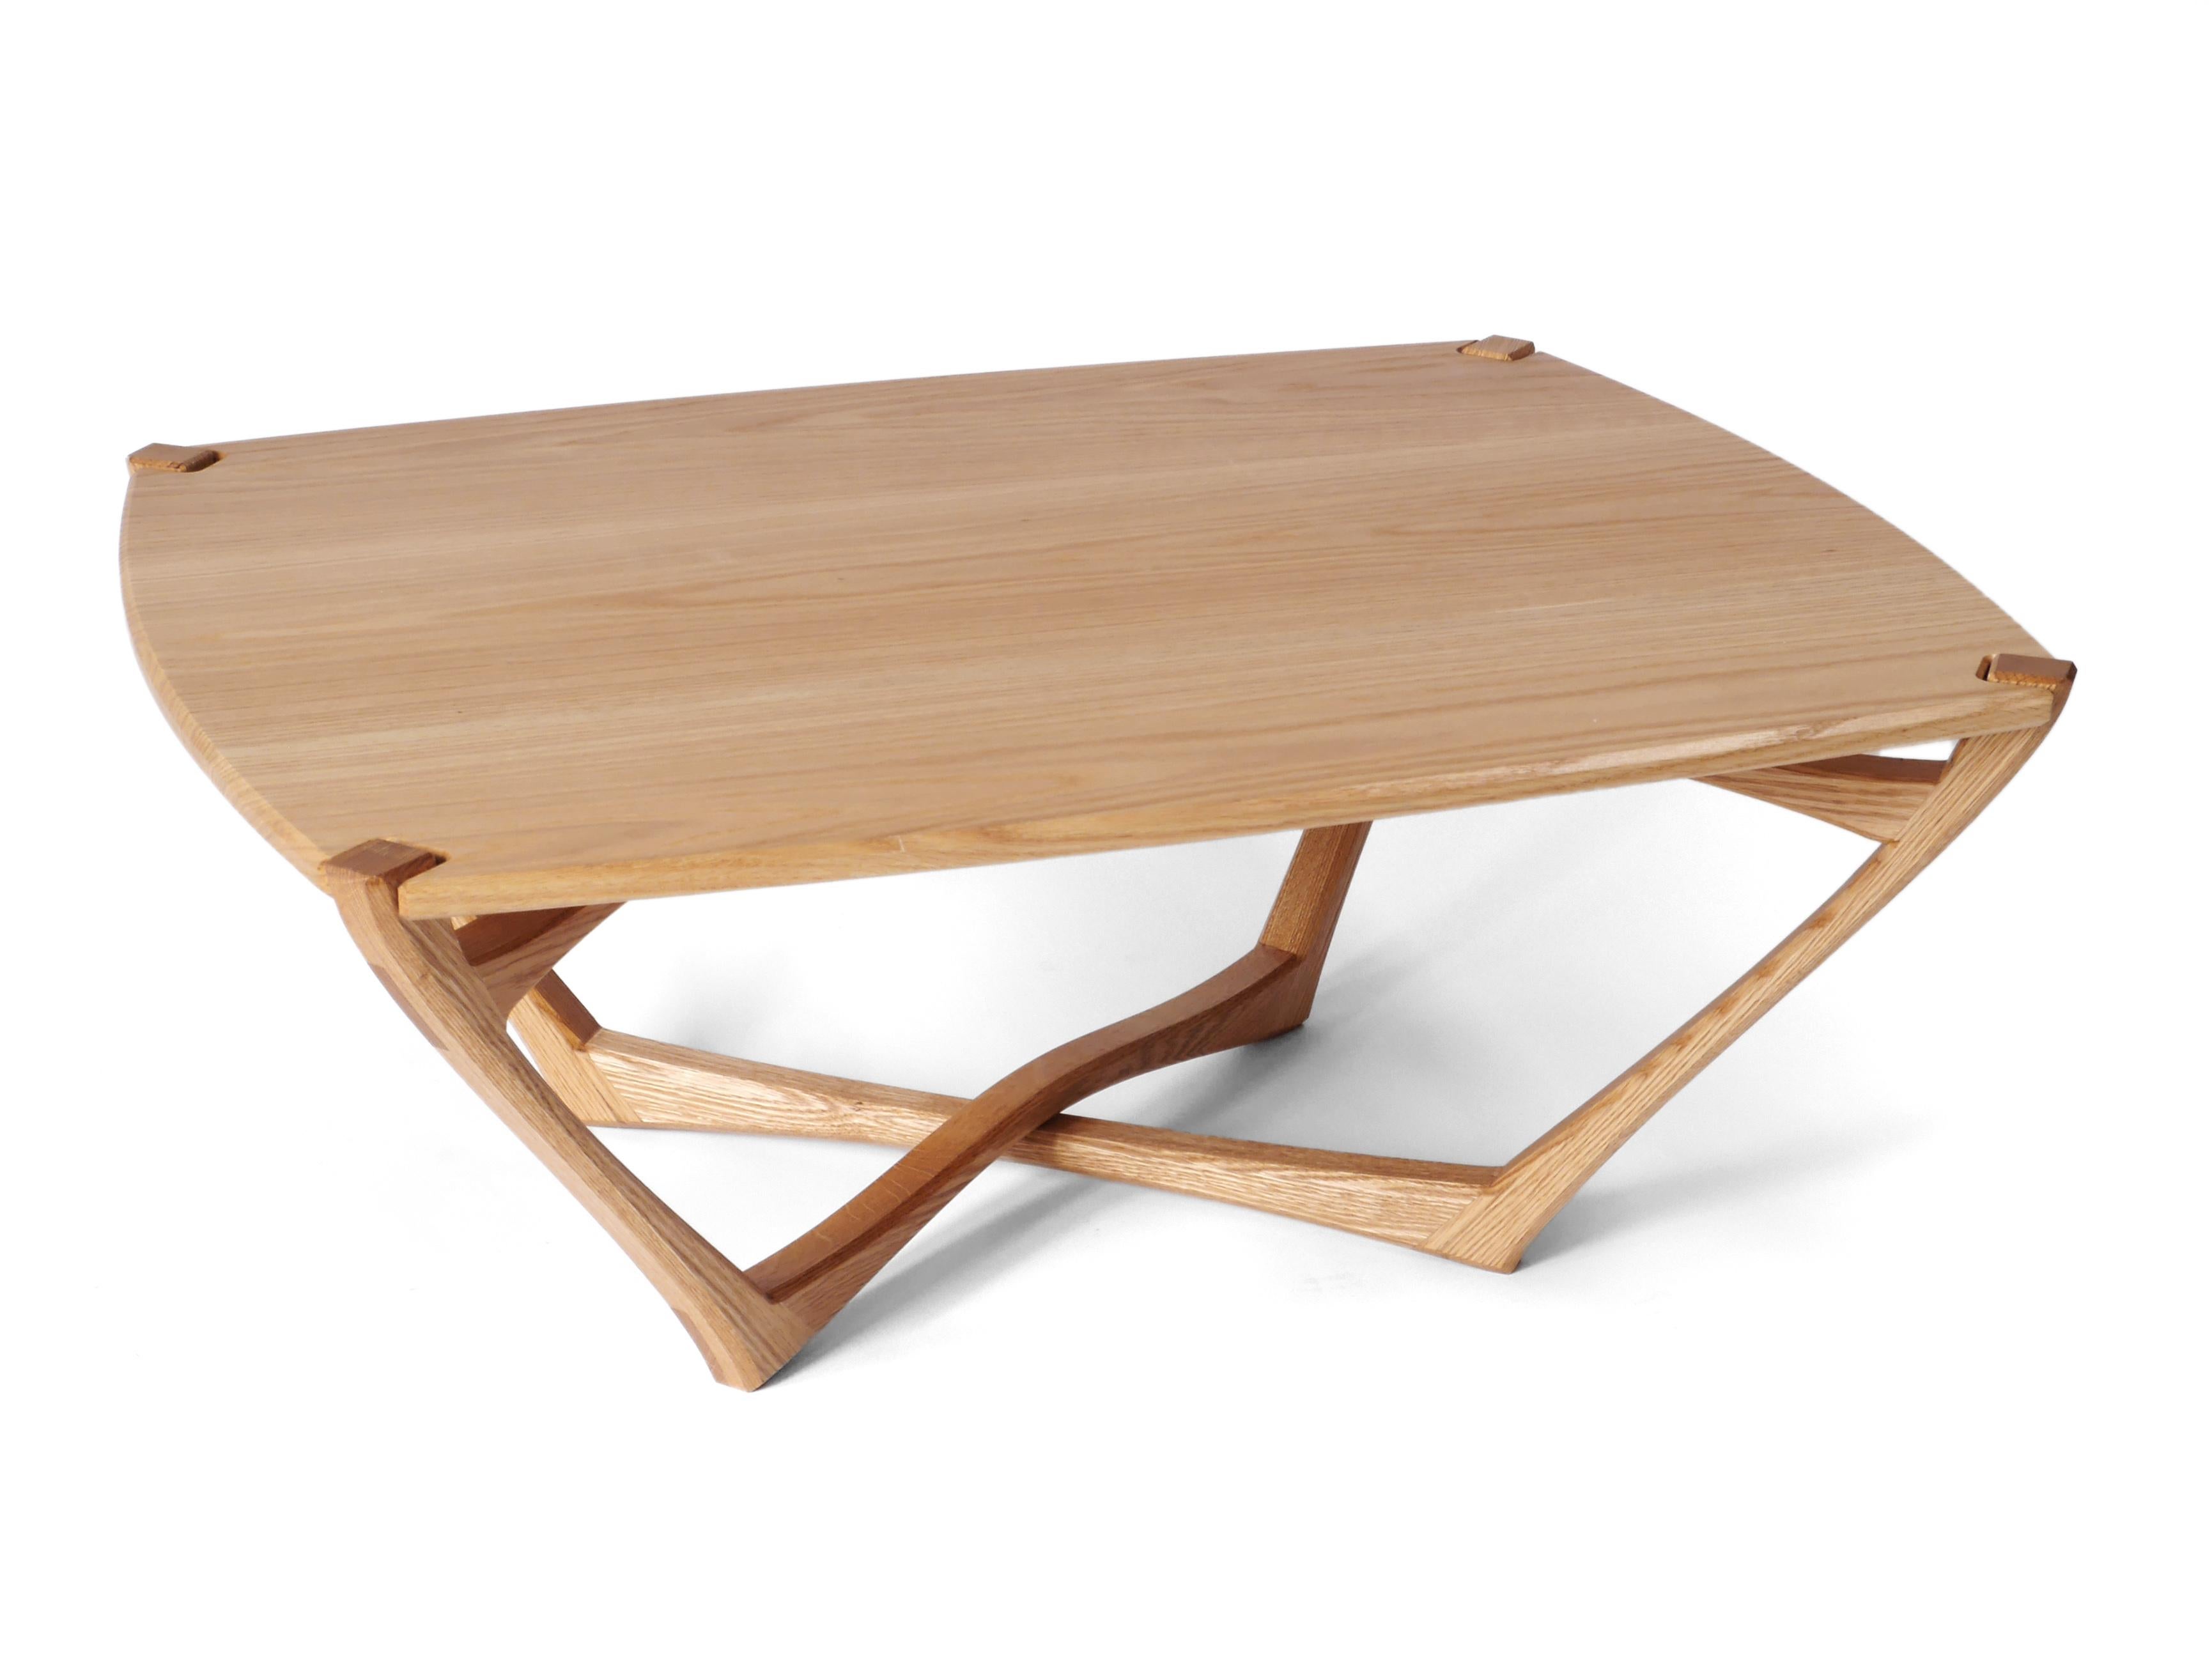 La table basse Mistral est ludique et pleine de vie avec une forme fluide et une construction riche en détails. Elle est fabriquée en bois dur de chêne massif et construite avec des menuiseries apparentes qui ont été soigneusement conçues pour la